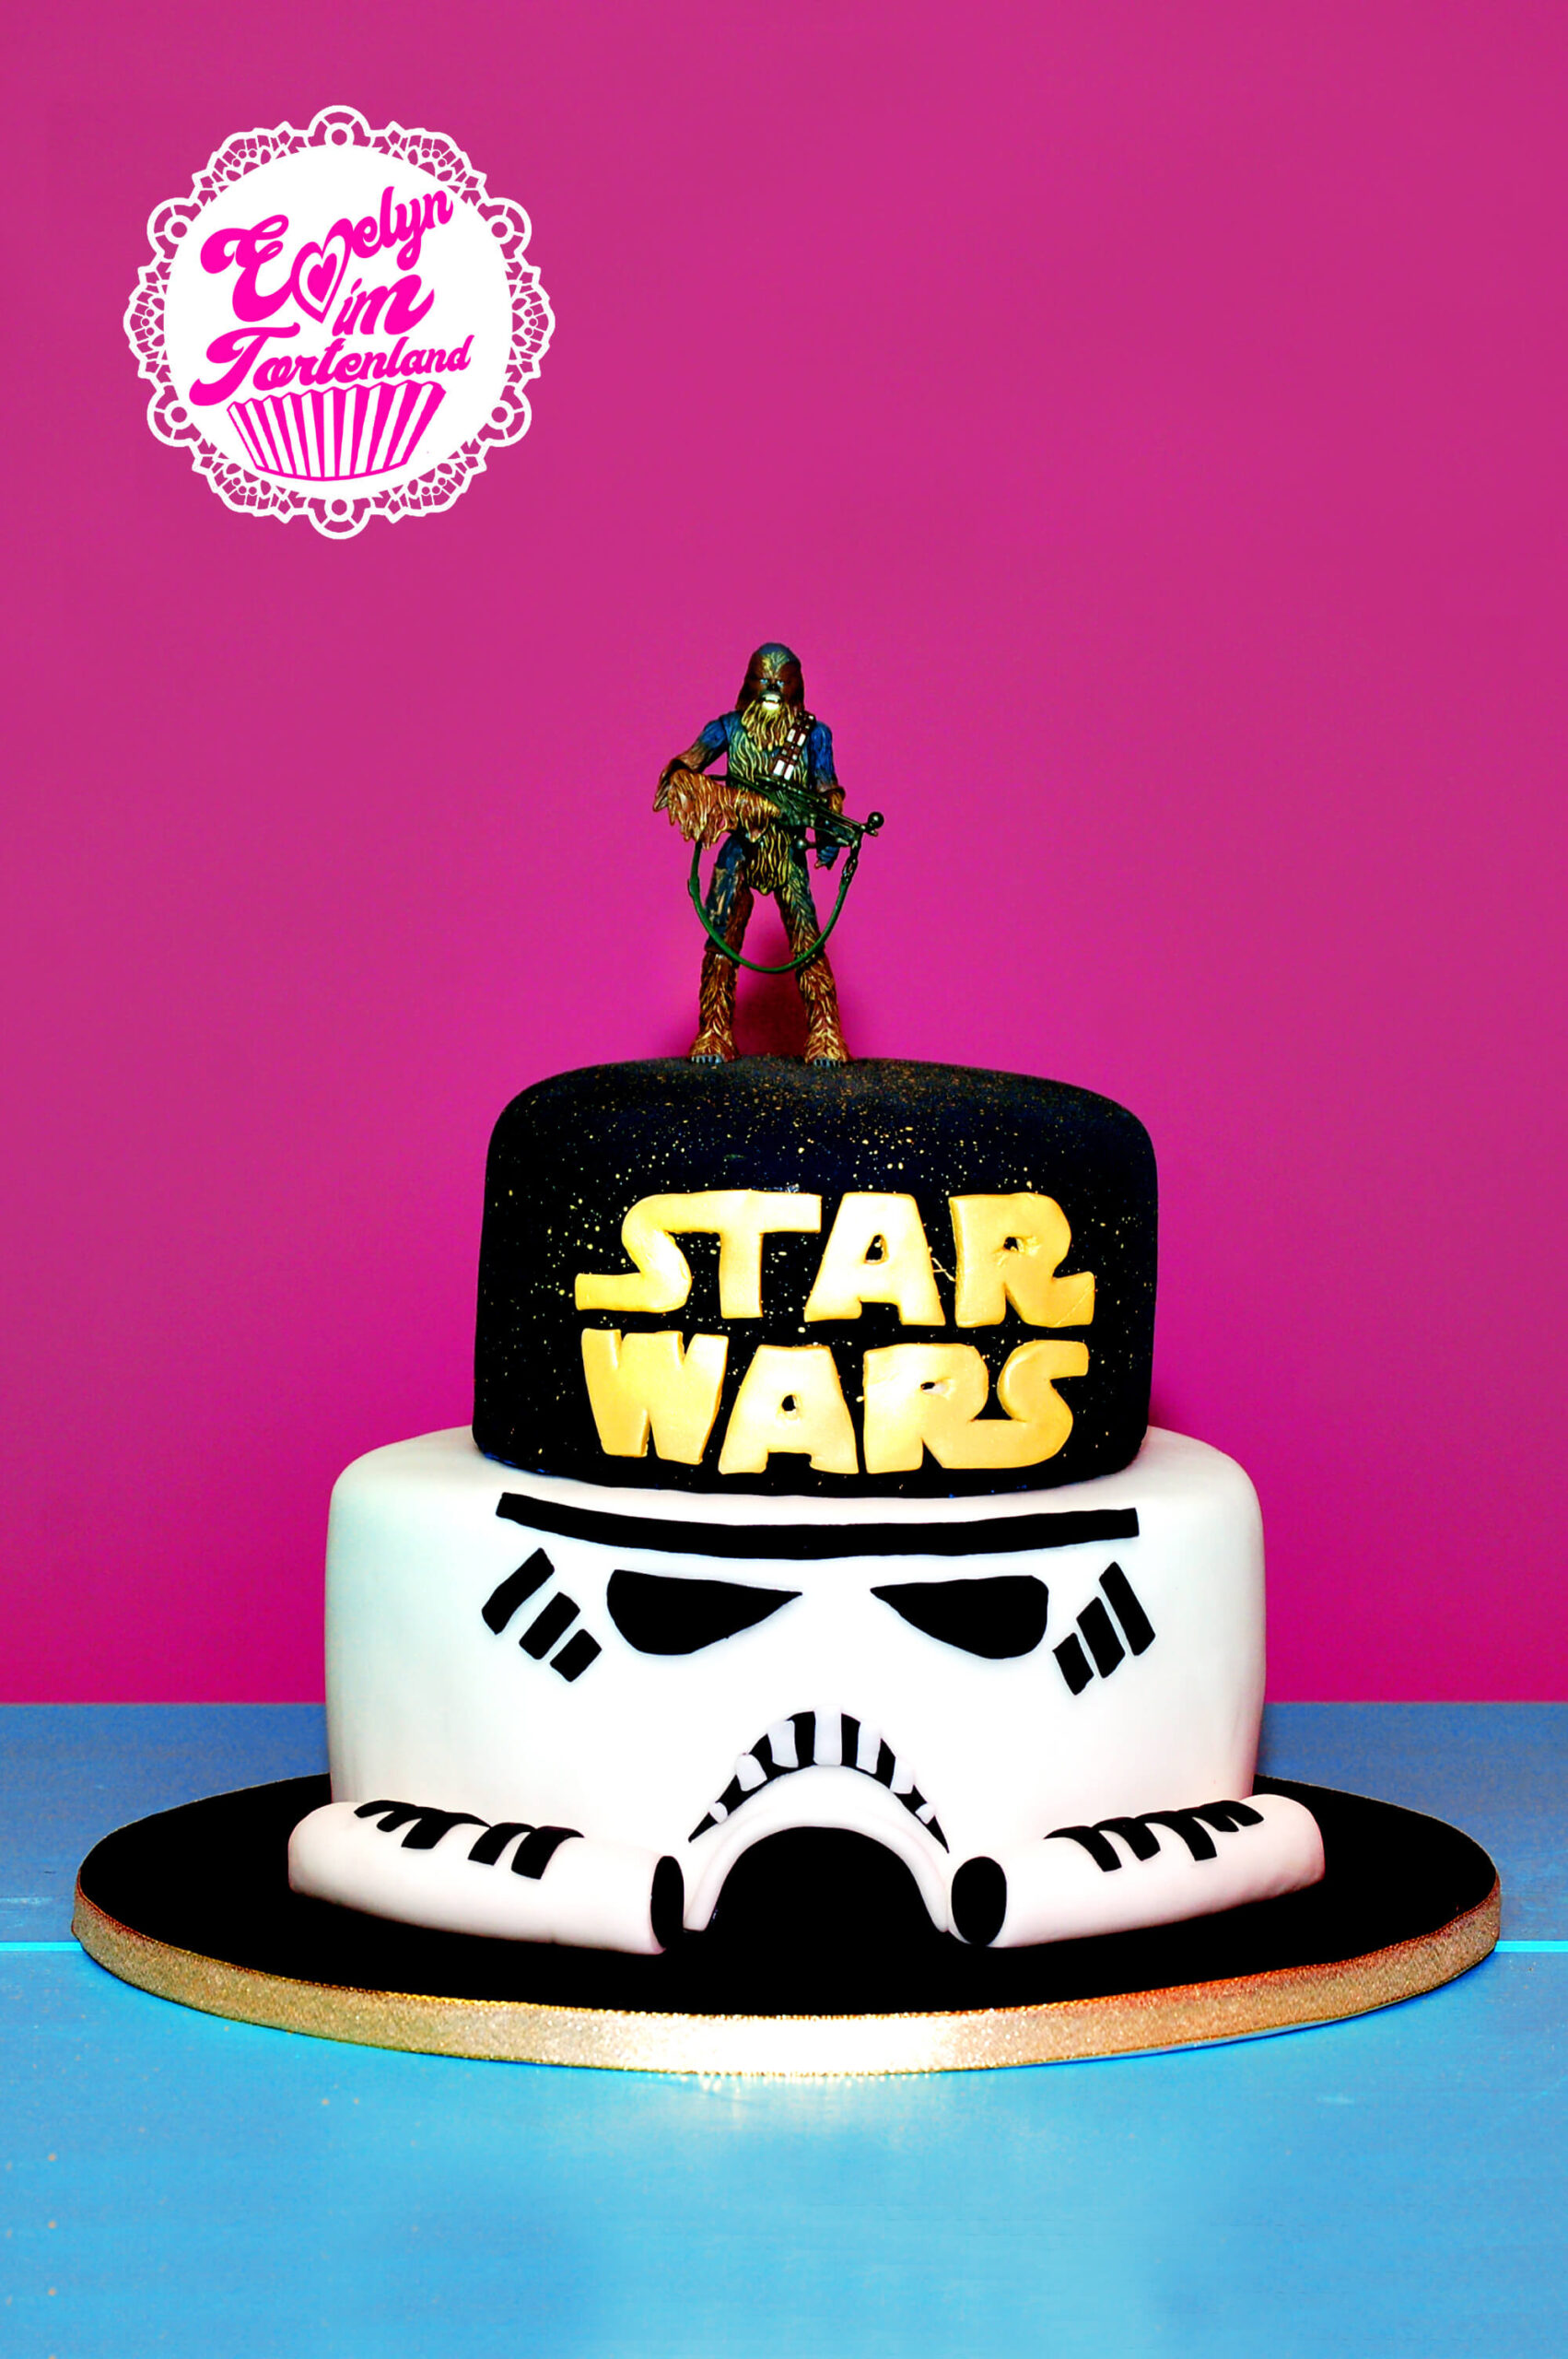 Star Wars Torte - Evelyn Im Tortenland für Star Wars Torte